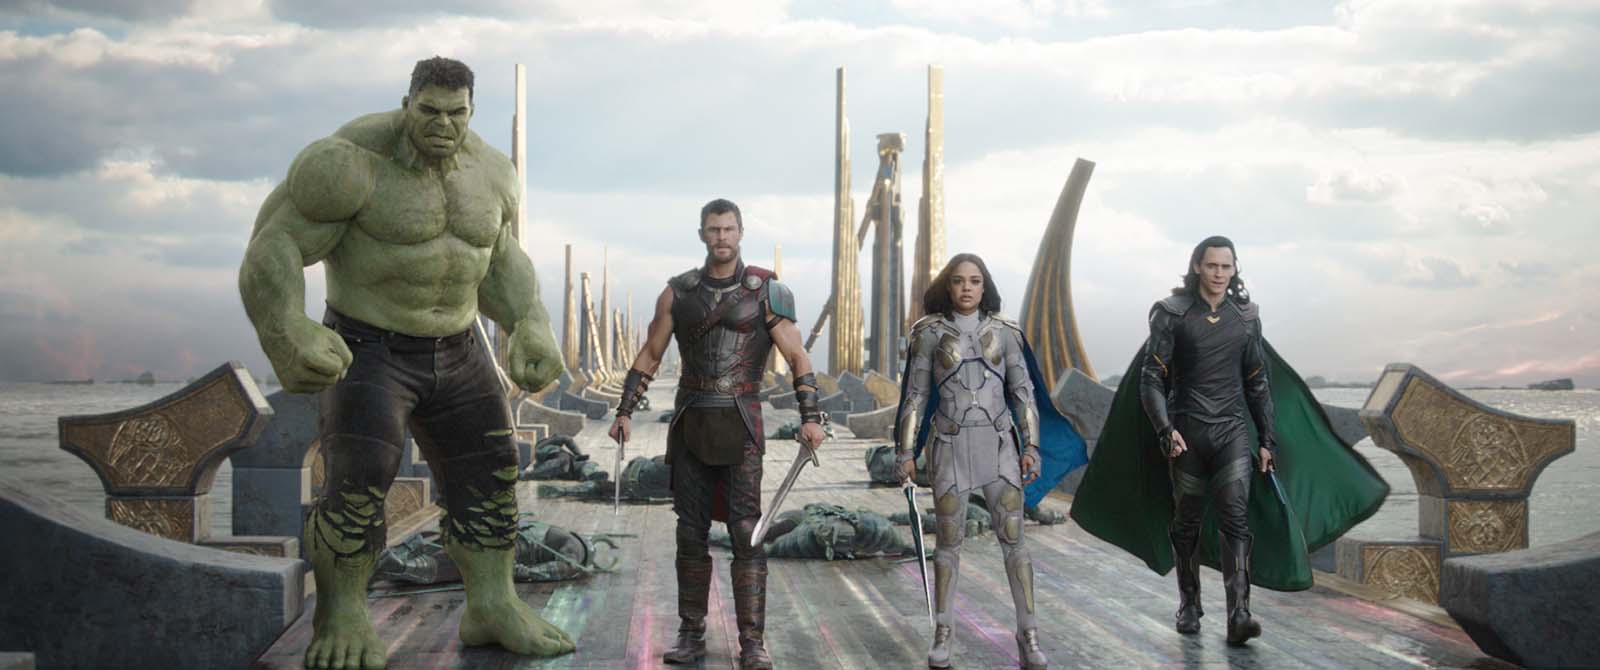 Thor : Ragnarok - Notre avis